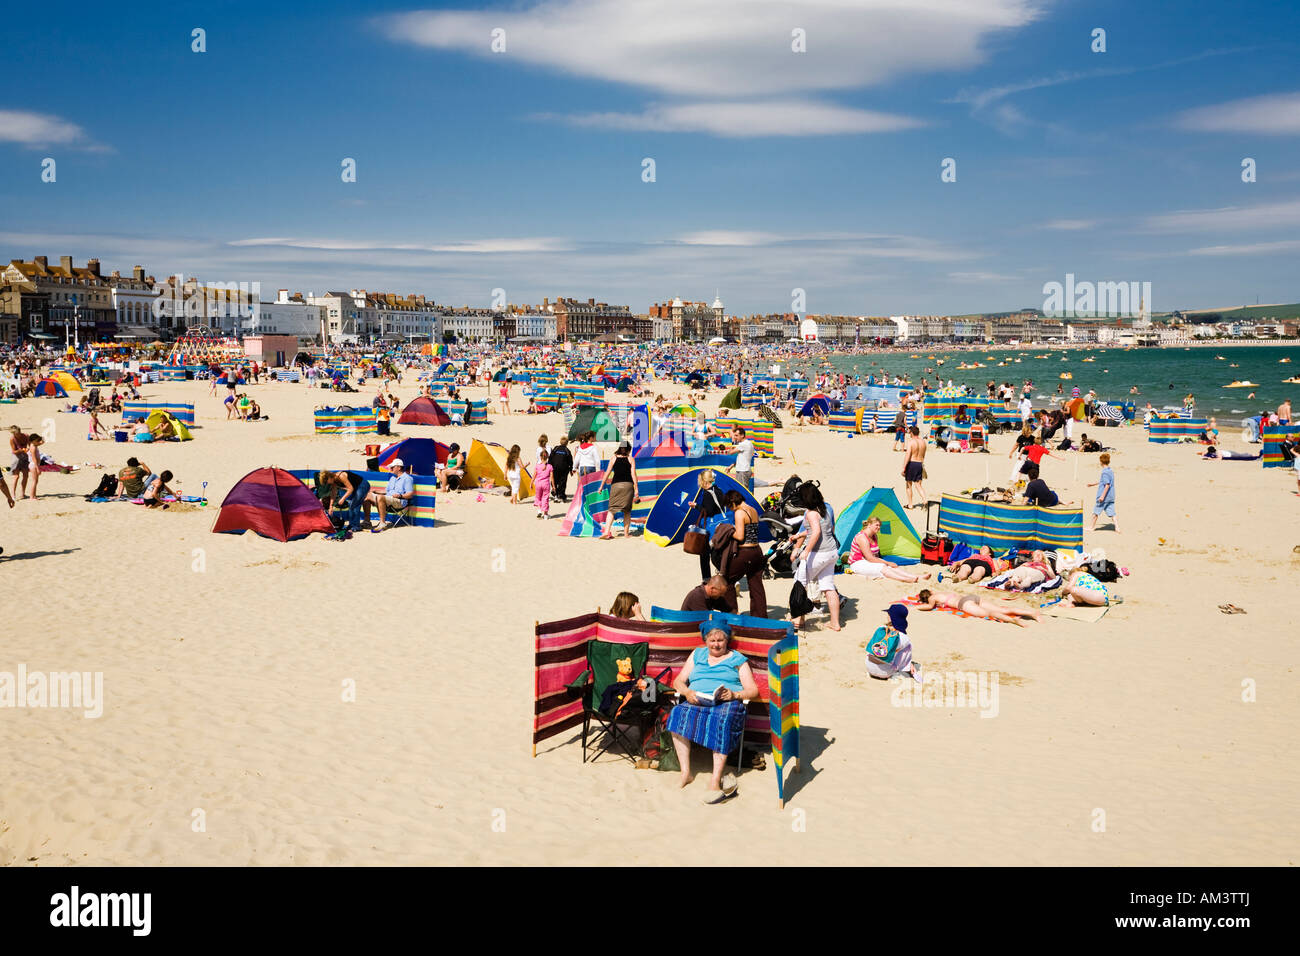 Les gens sur le bord de plage bondée occupé par une chaude journée d'été, plage de Weymouth, Dorset, England, UK Banque D'Images